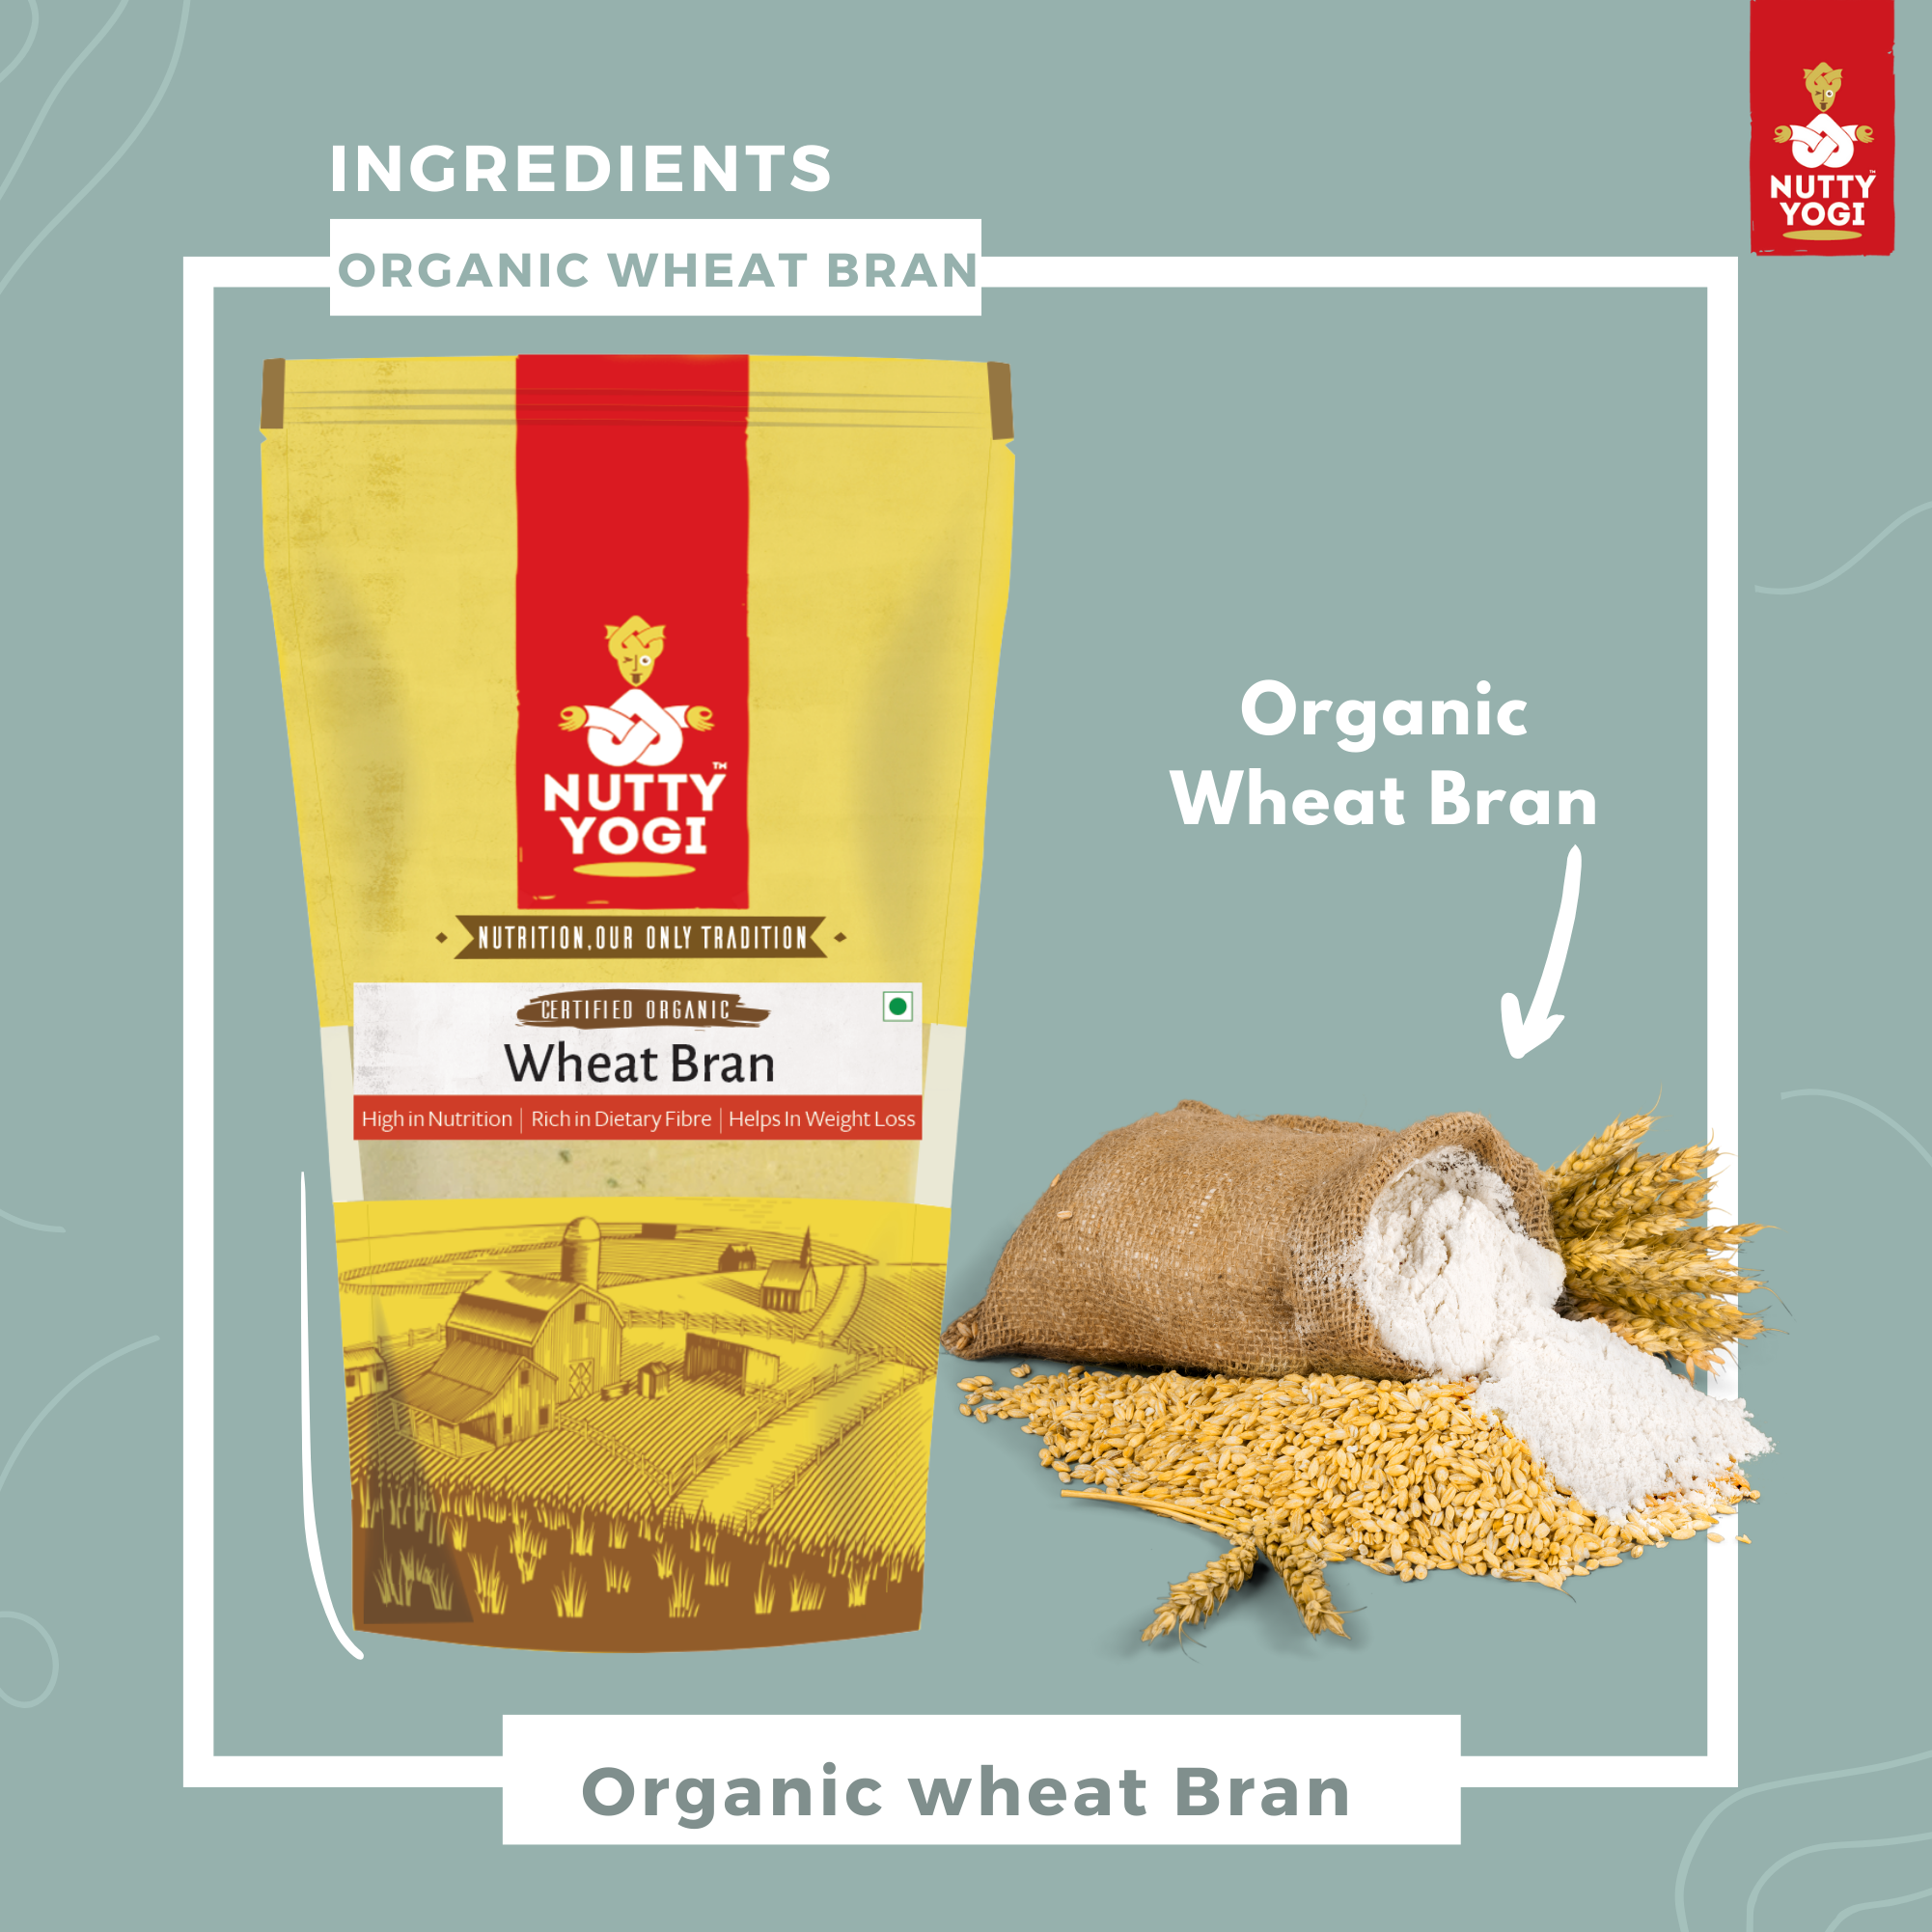 Nutty Yogi Organic Wheat Bran